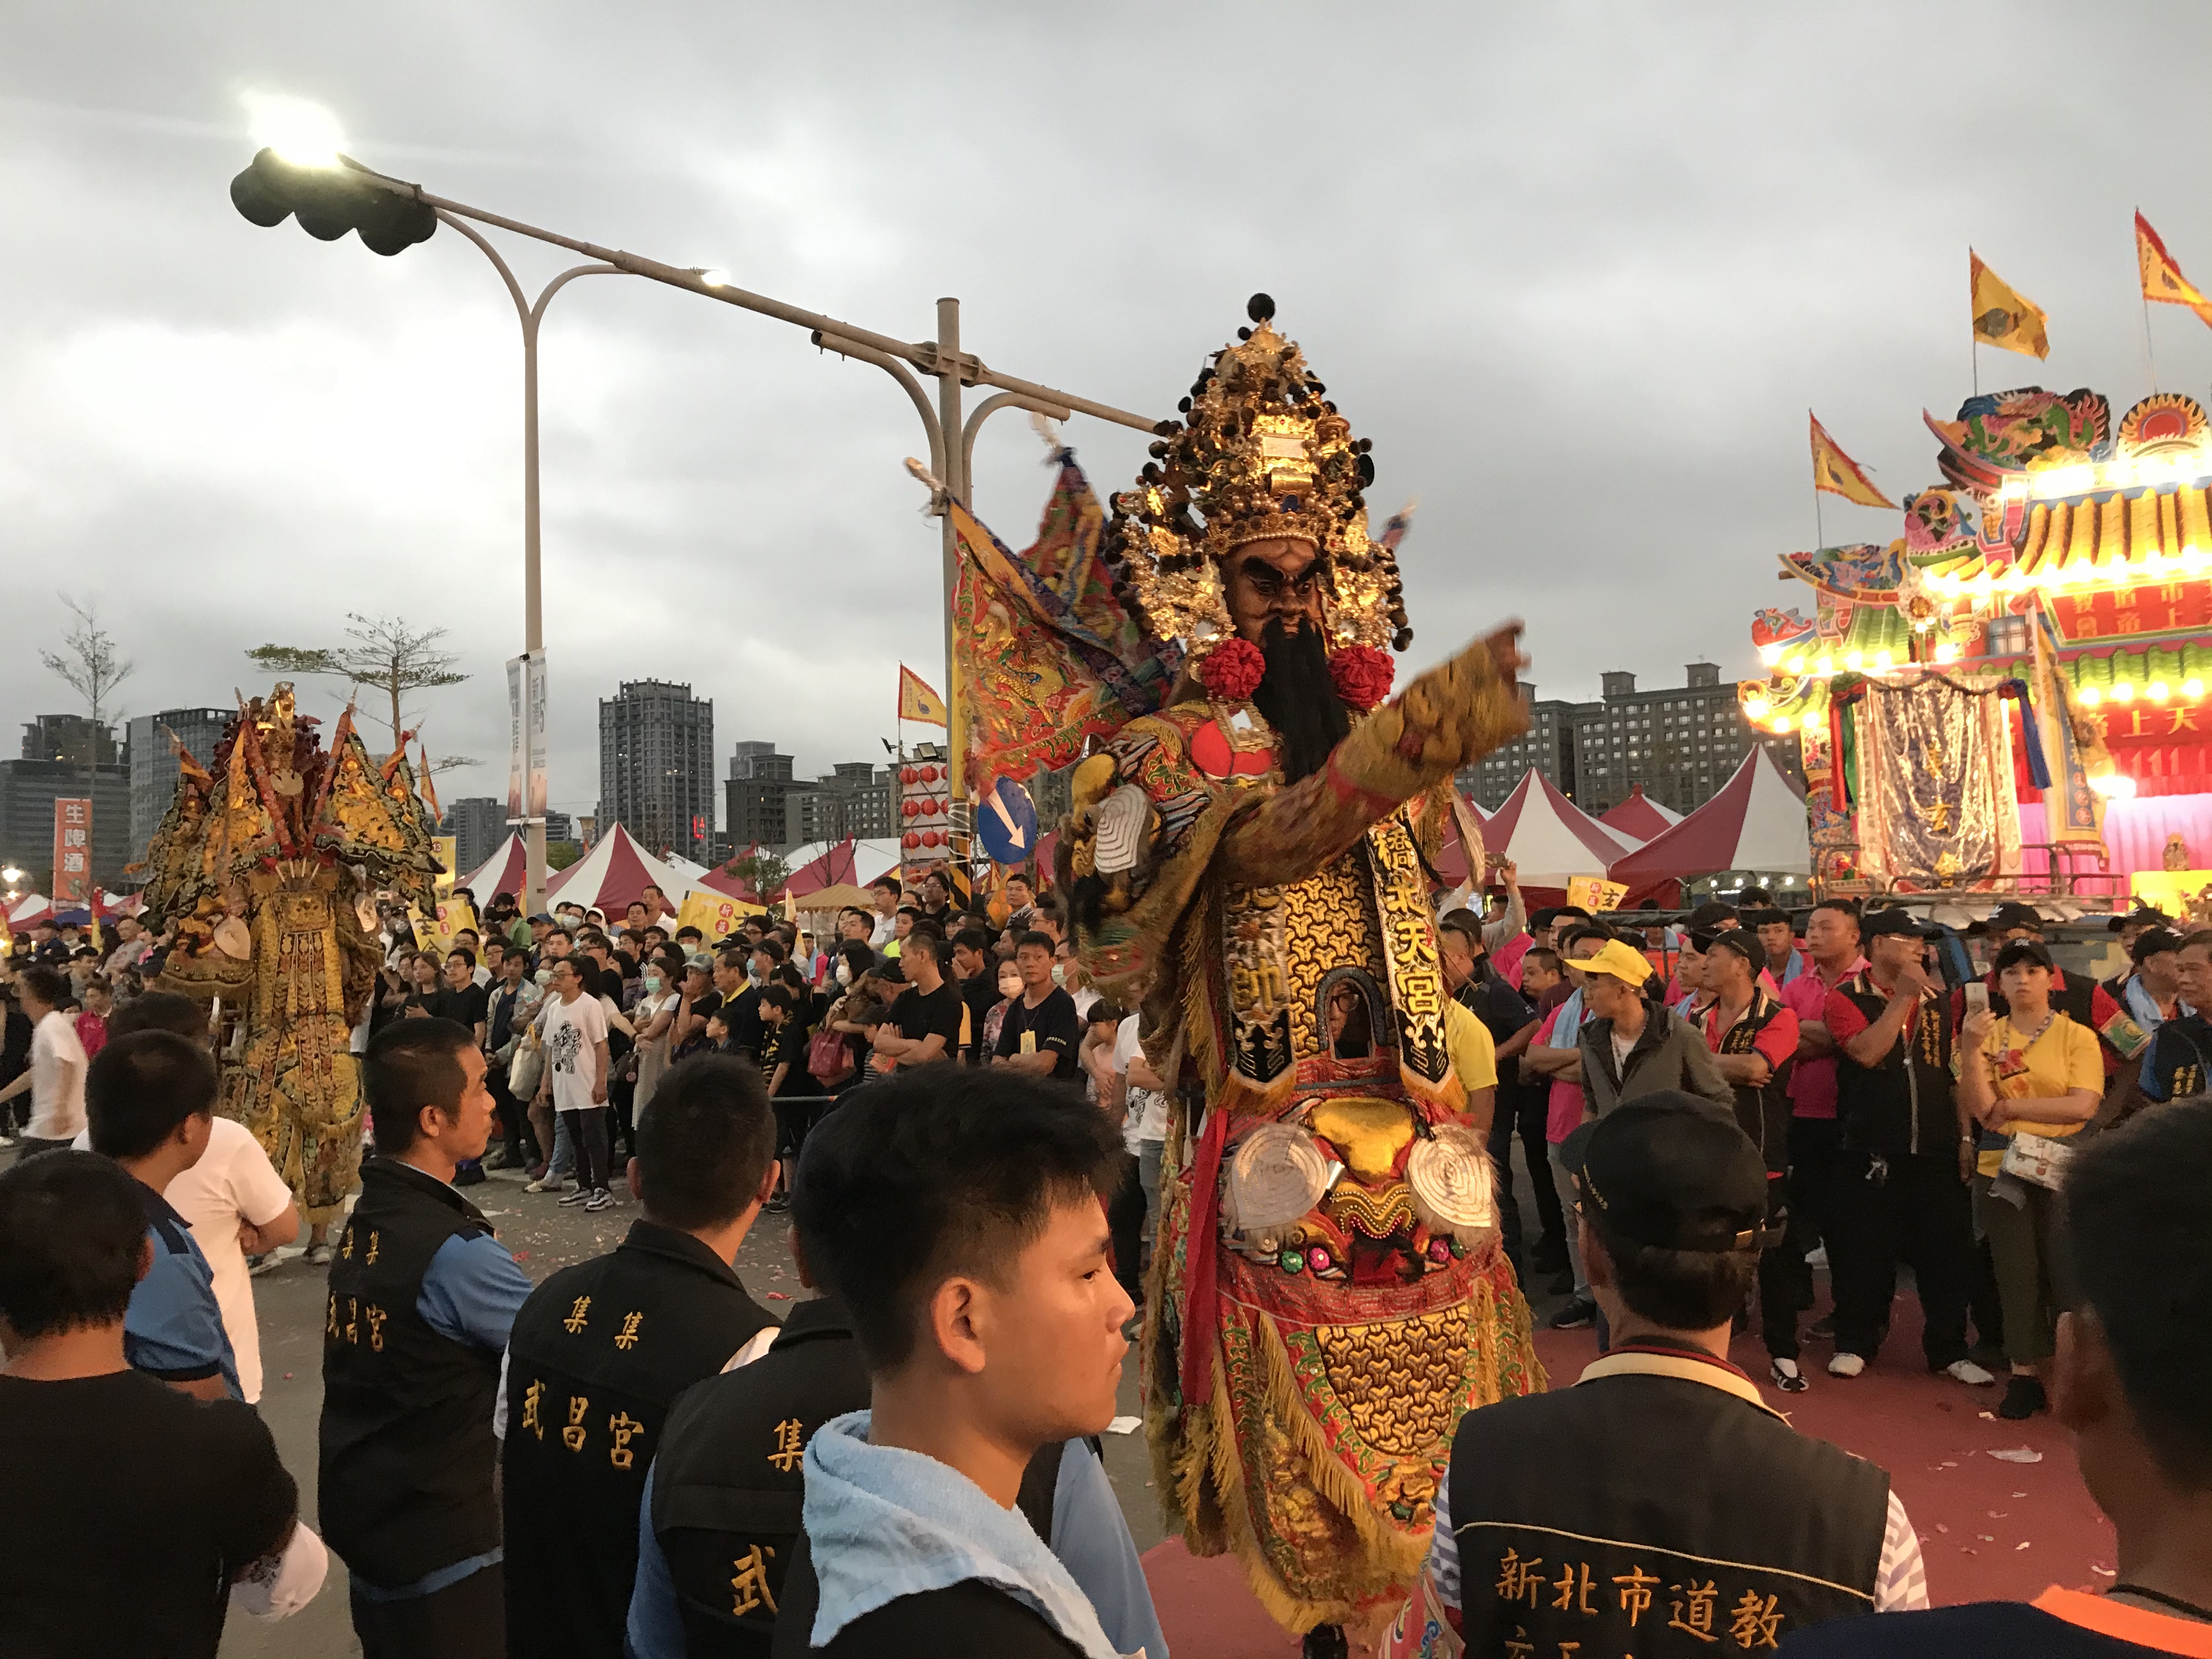 現場邀全臺灣上百家供奉玄天上帝宮廟熱鬧展開慶祝。